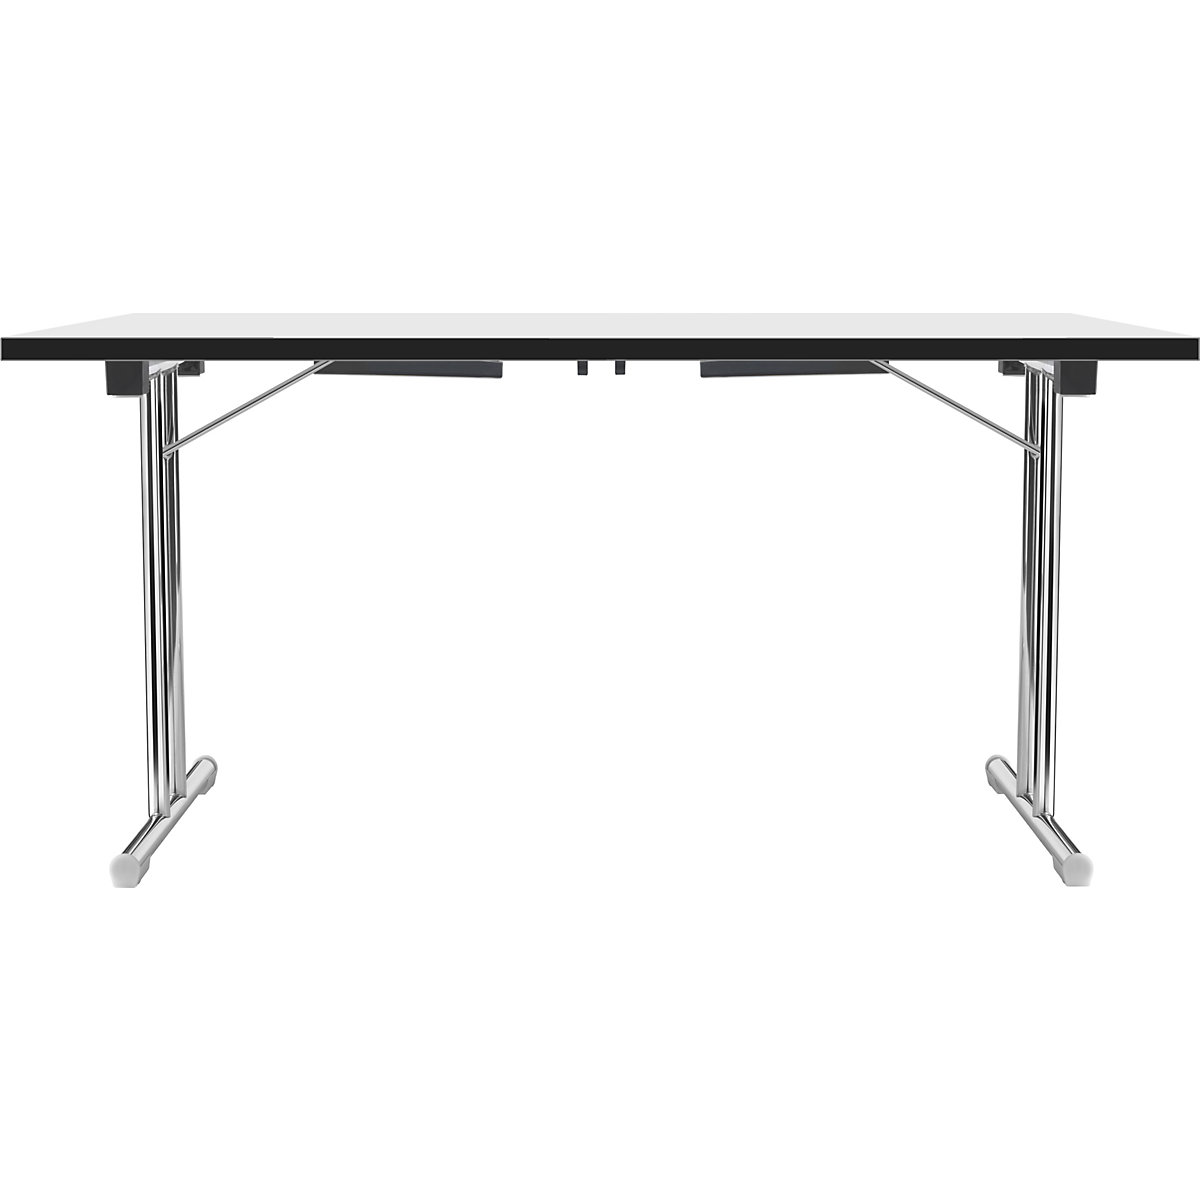 Zložljiva miza z dvojnim podnožjem v obliki črke T, ogrodje iz okrogle jeklene cevi, kromirano, bela/črna, ŠxG 1200 x 600 mm-12